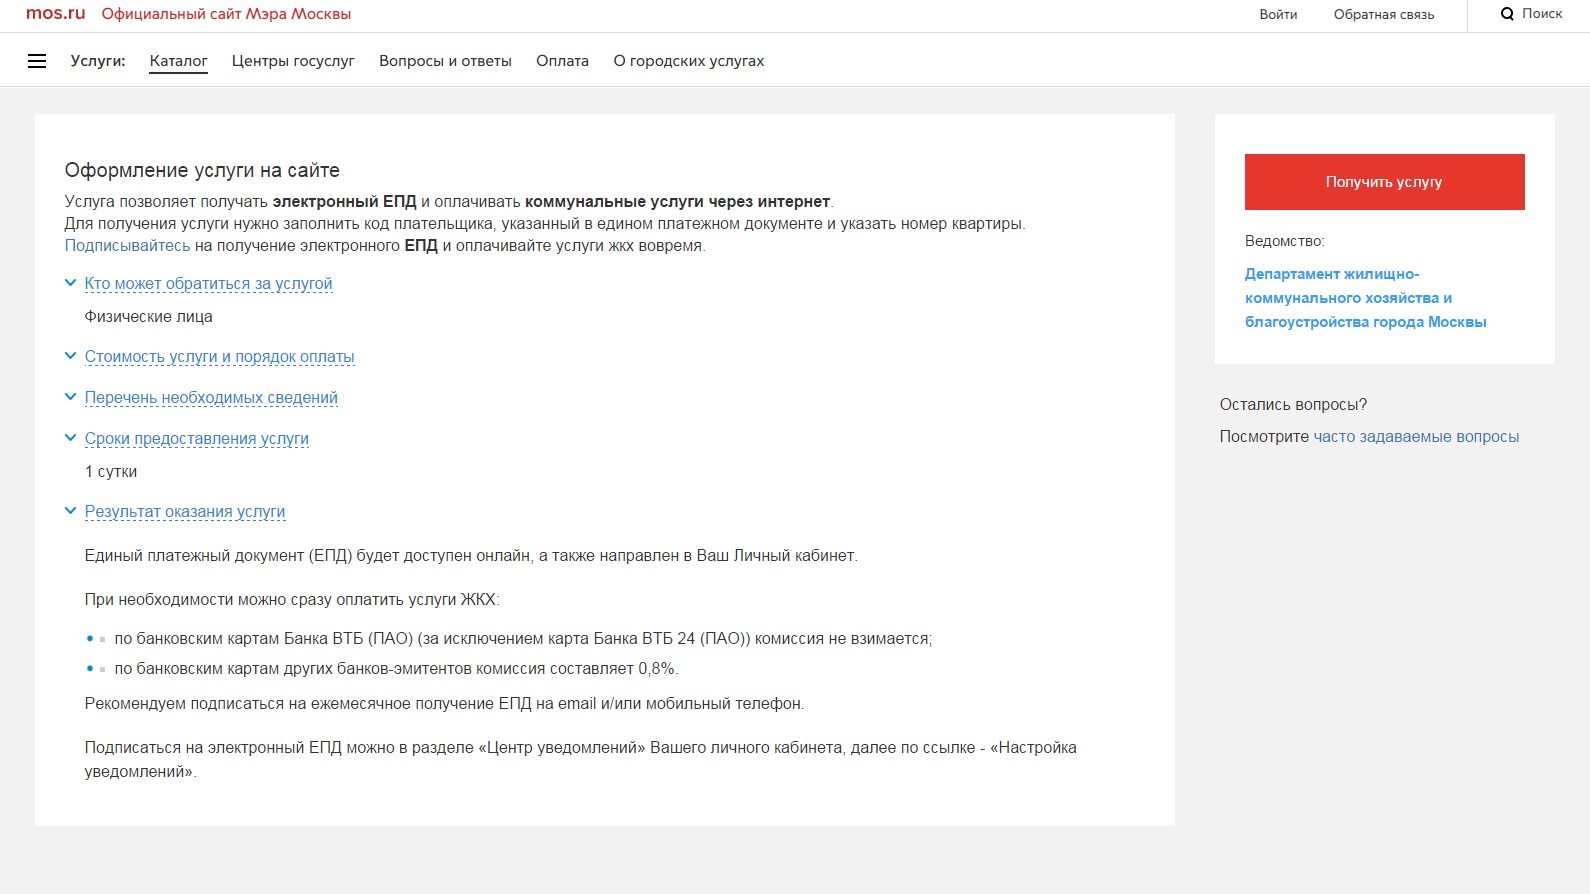 Получить и оплатить единый платежный документ (ЕПД) через интернет Источник: mos.ru 